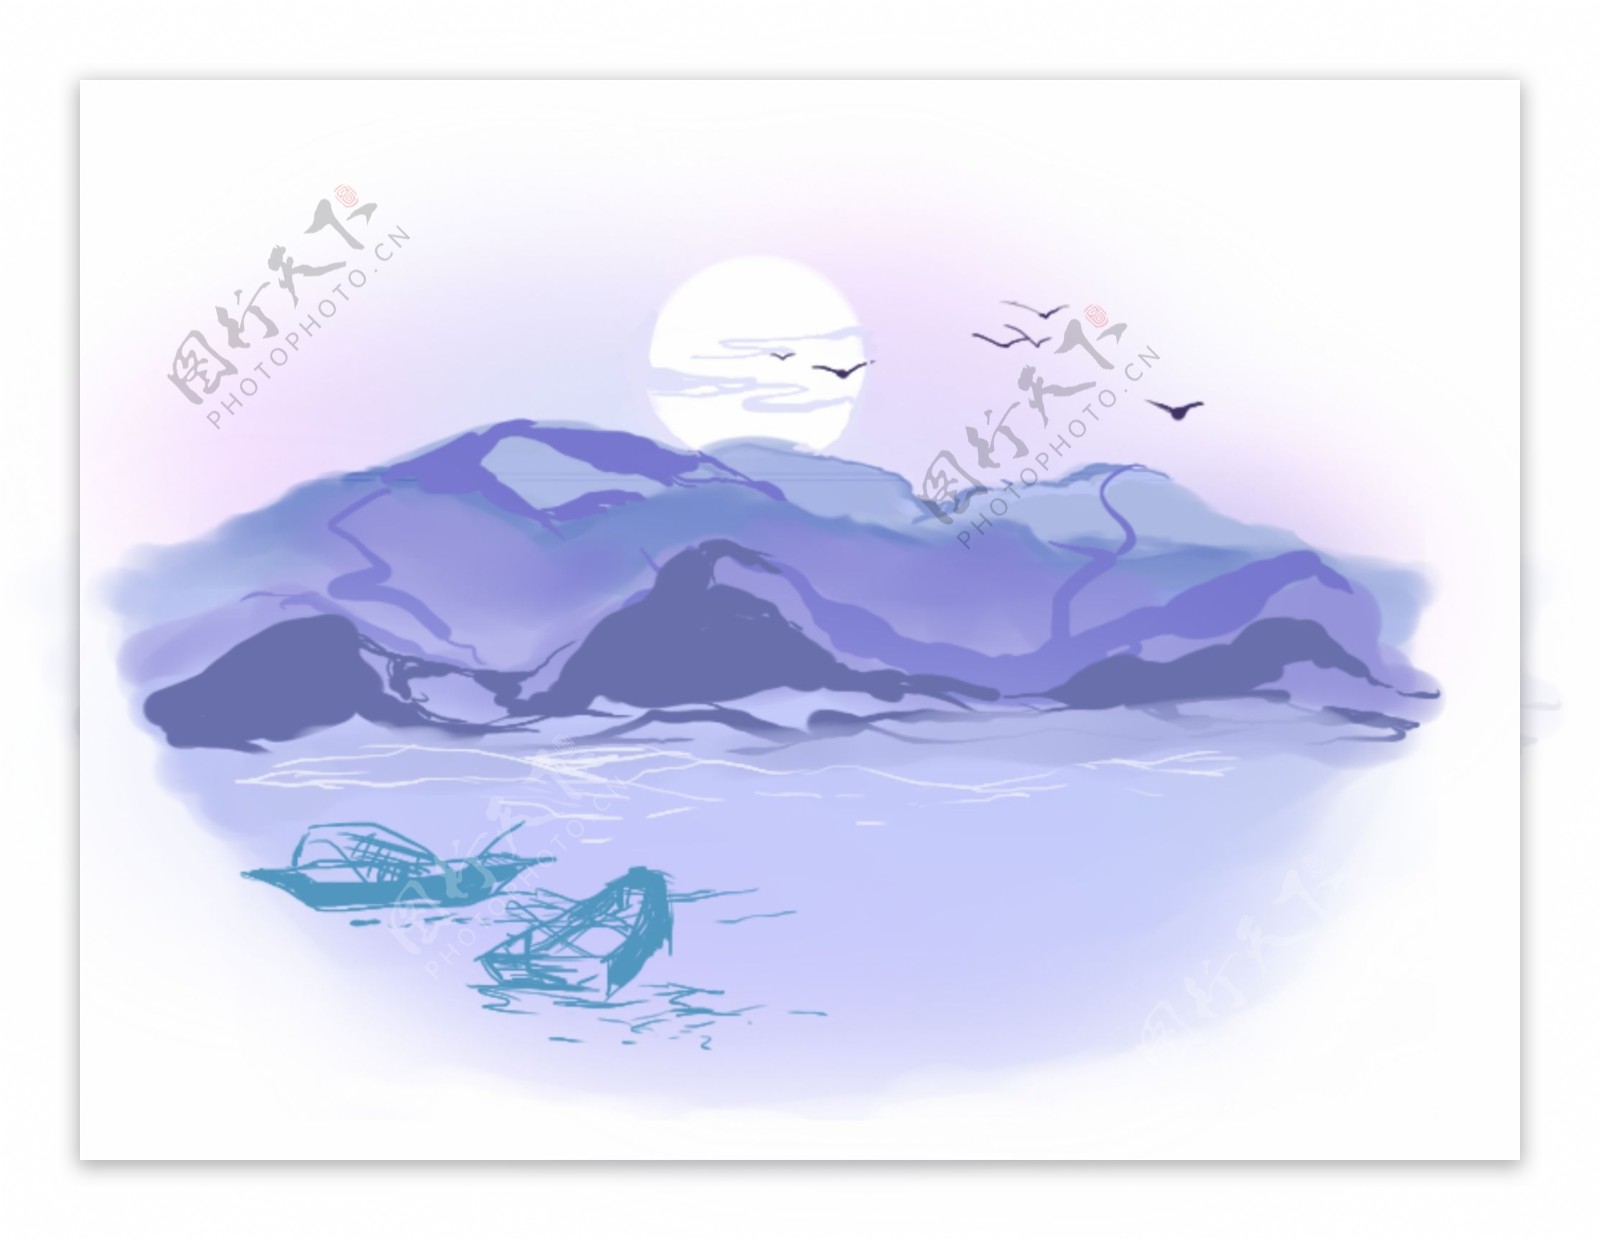 蓝紫色月下山水风景原创手绘插图